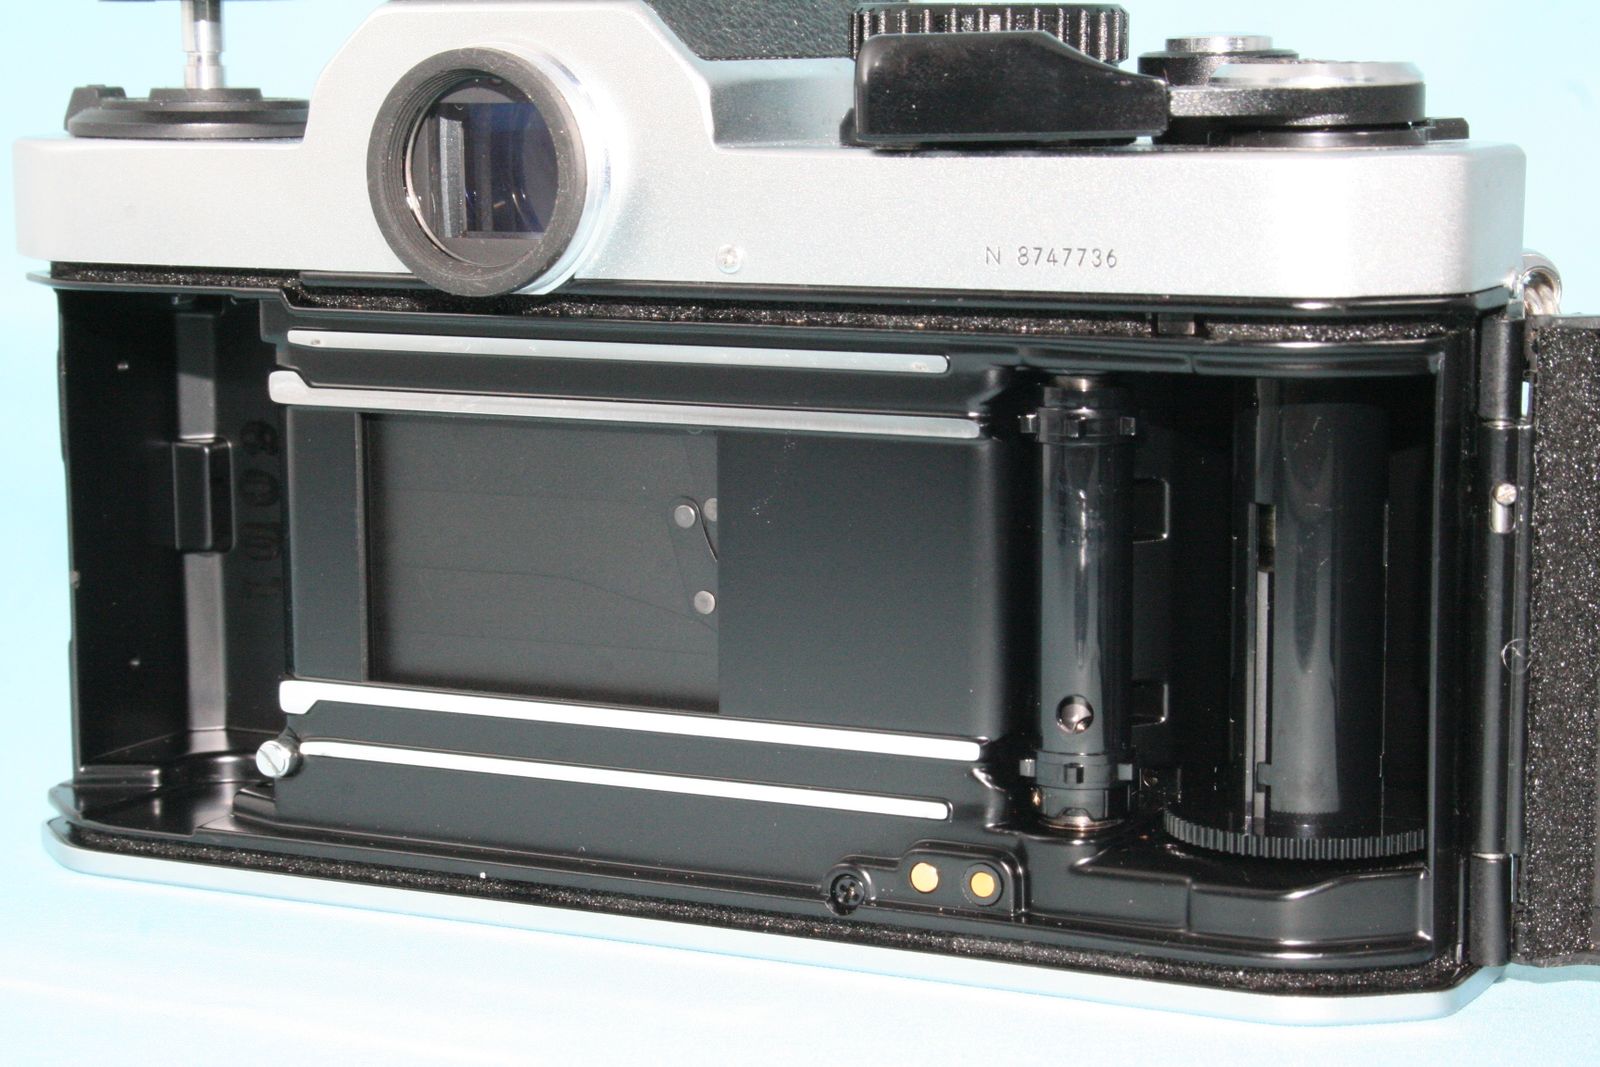 オーバーホール済 Nikon ニコン New FM2 後期型 シルバー 完動美品